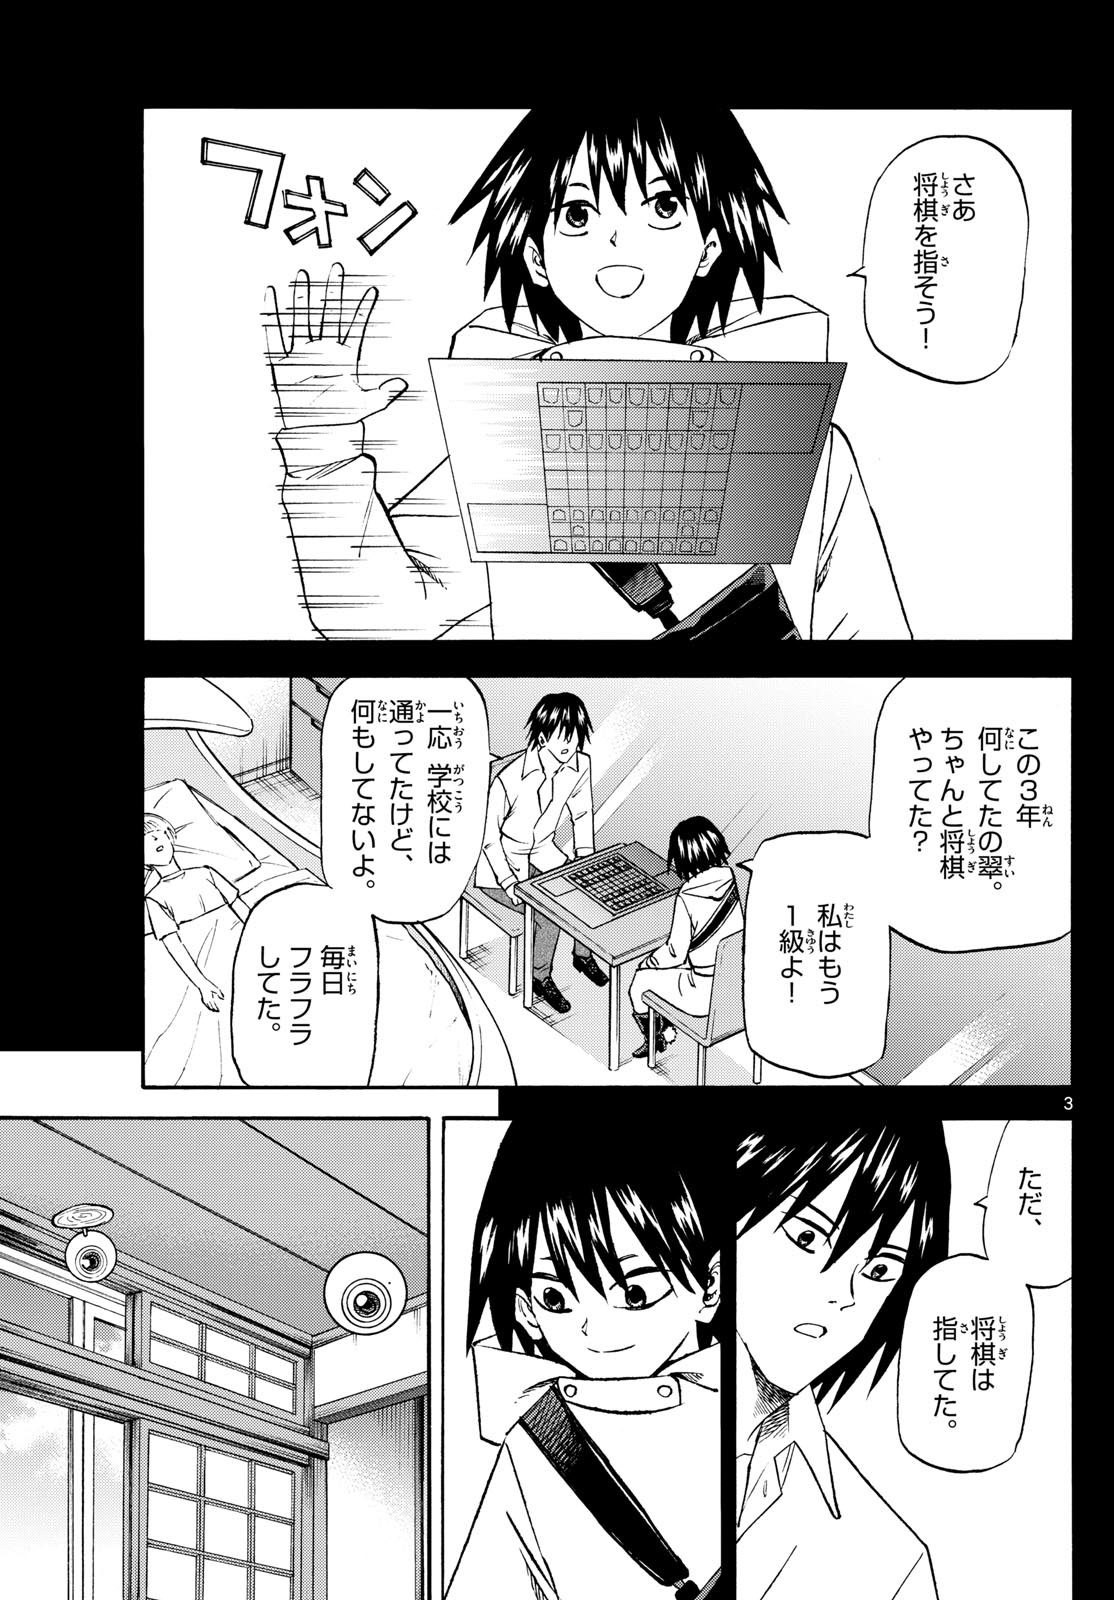 Tatsu to Ichigo - Chapter 194 - Page 3